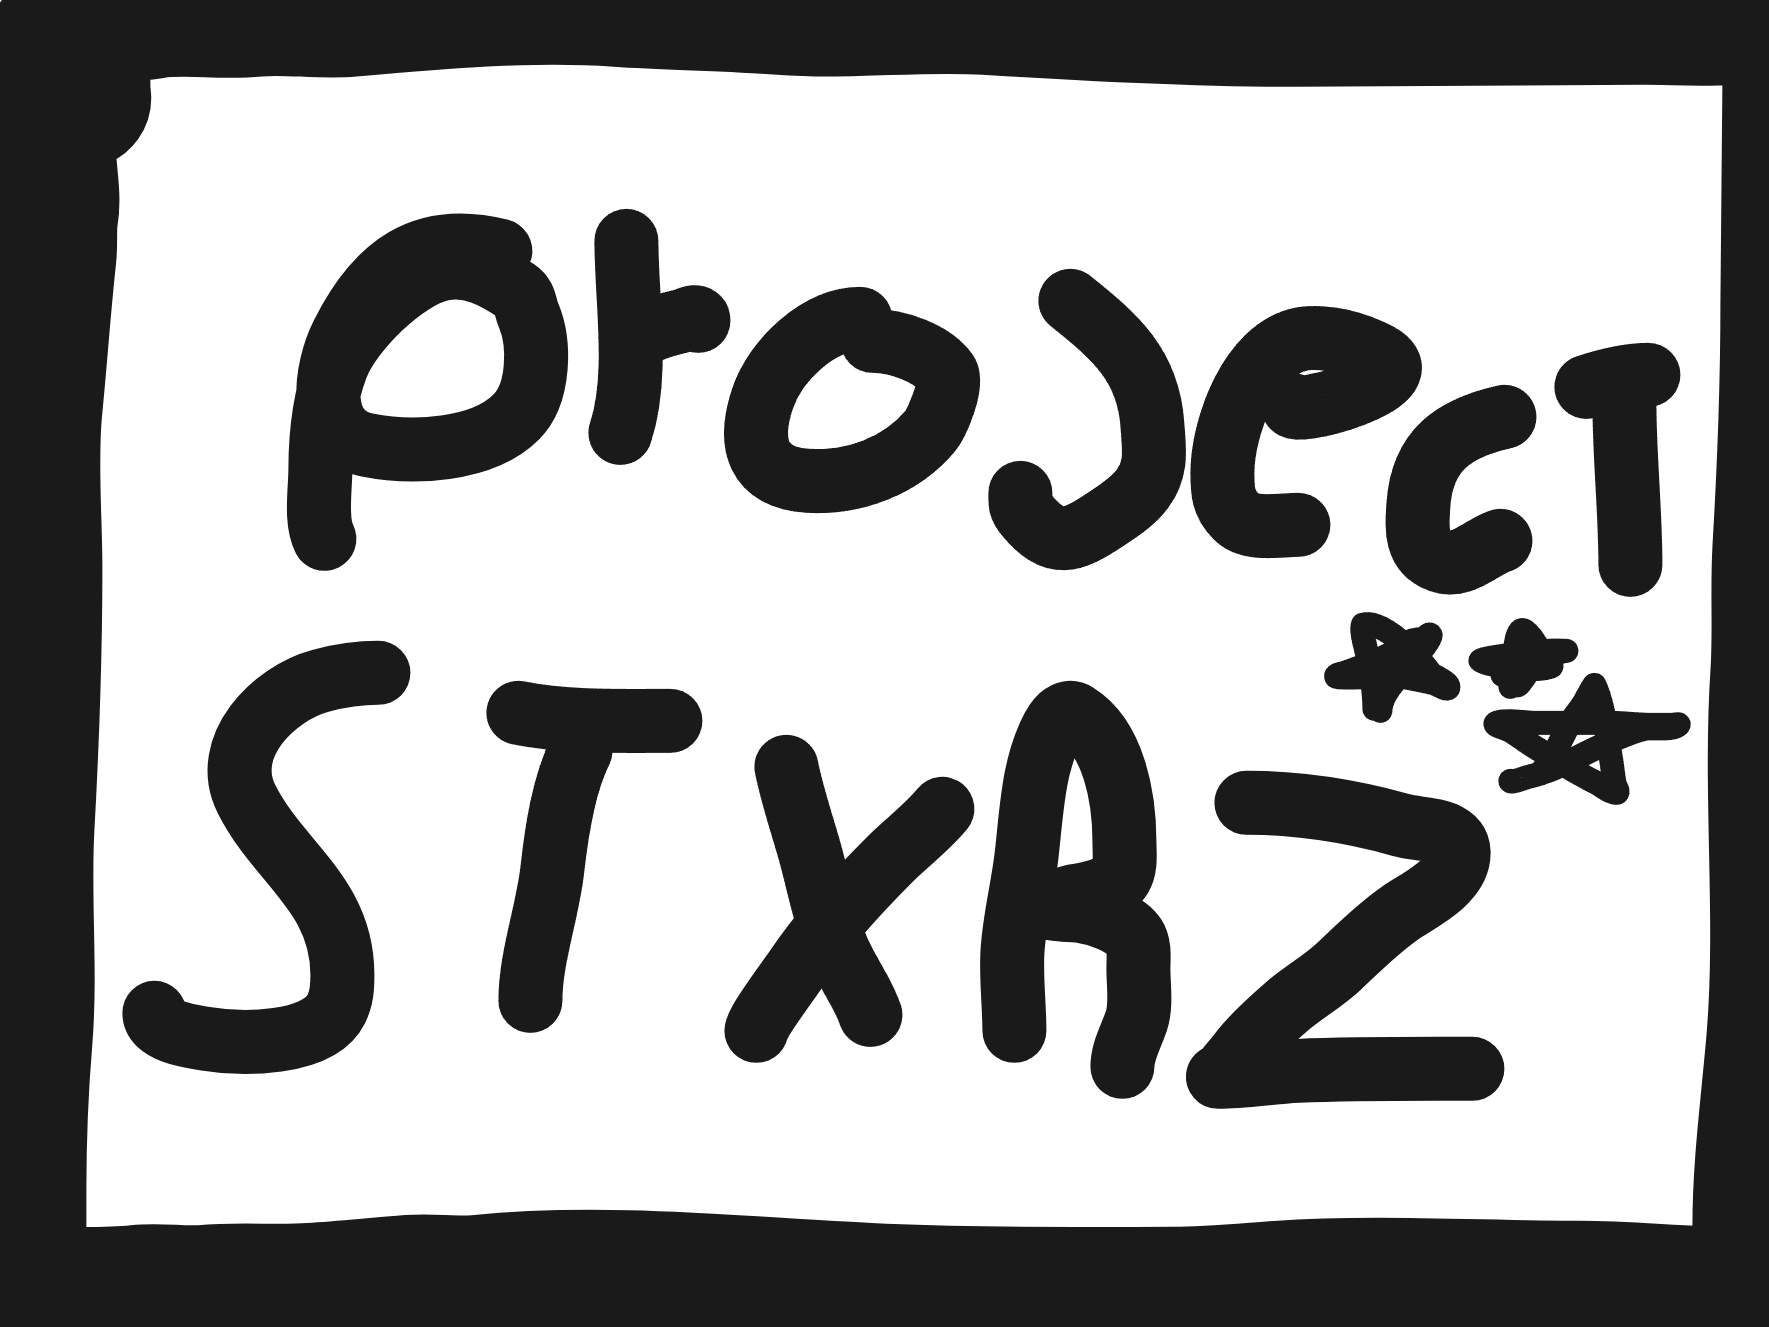 Project Stxrz